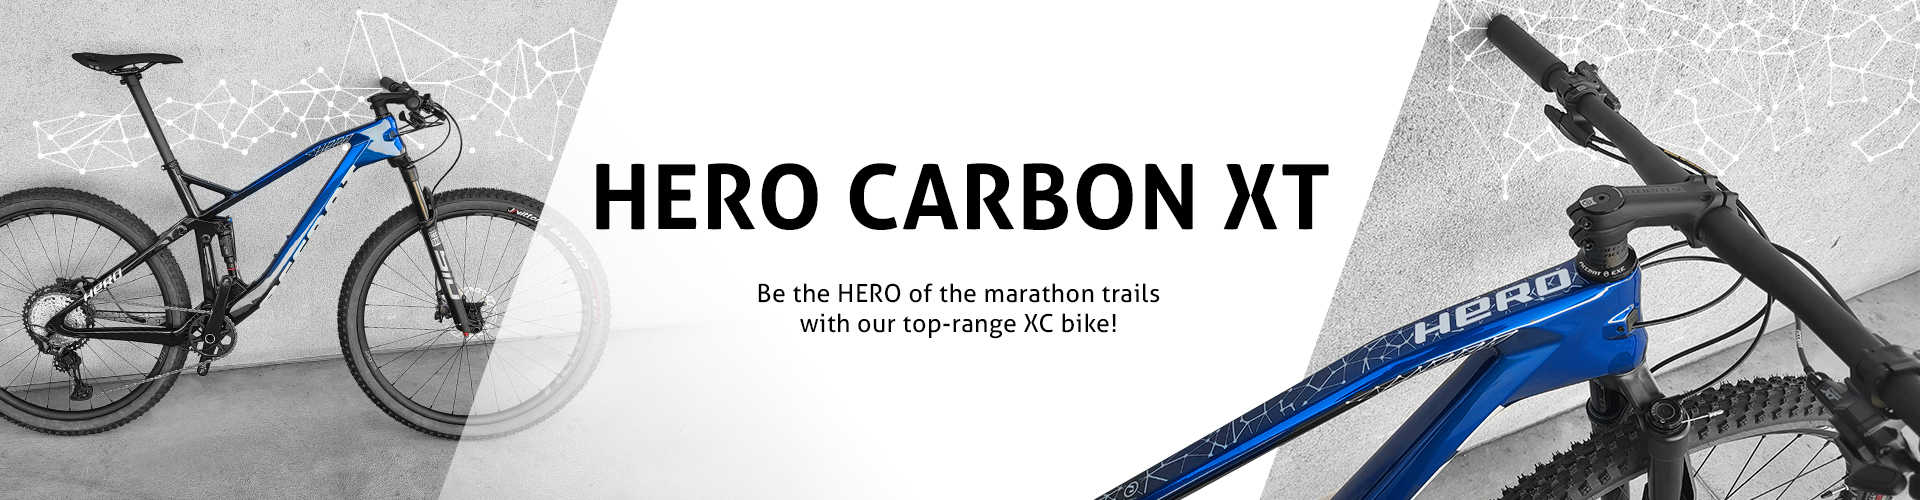 Accent-Bikes Hero Carbon XT